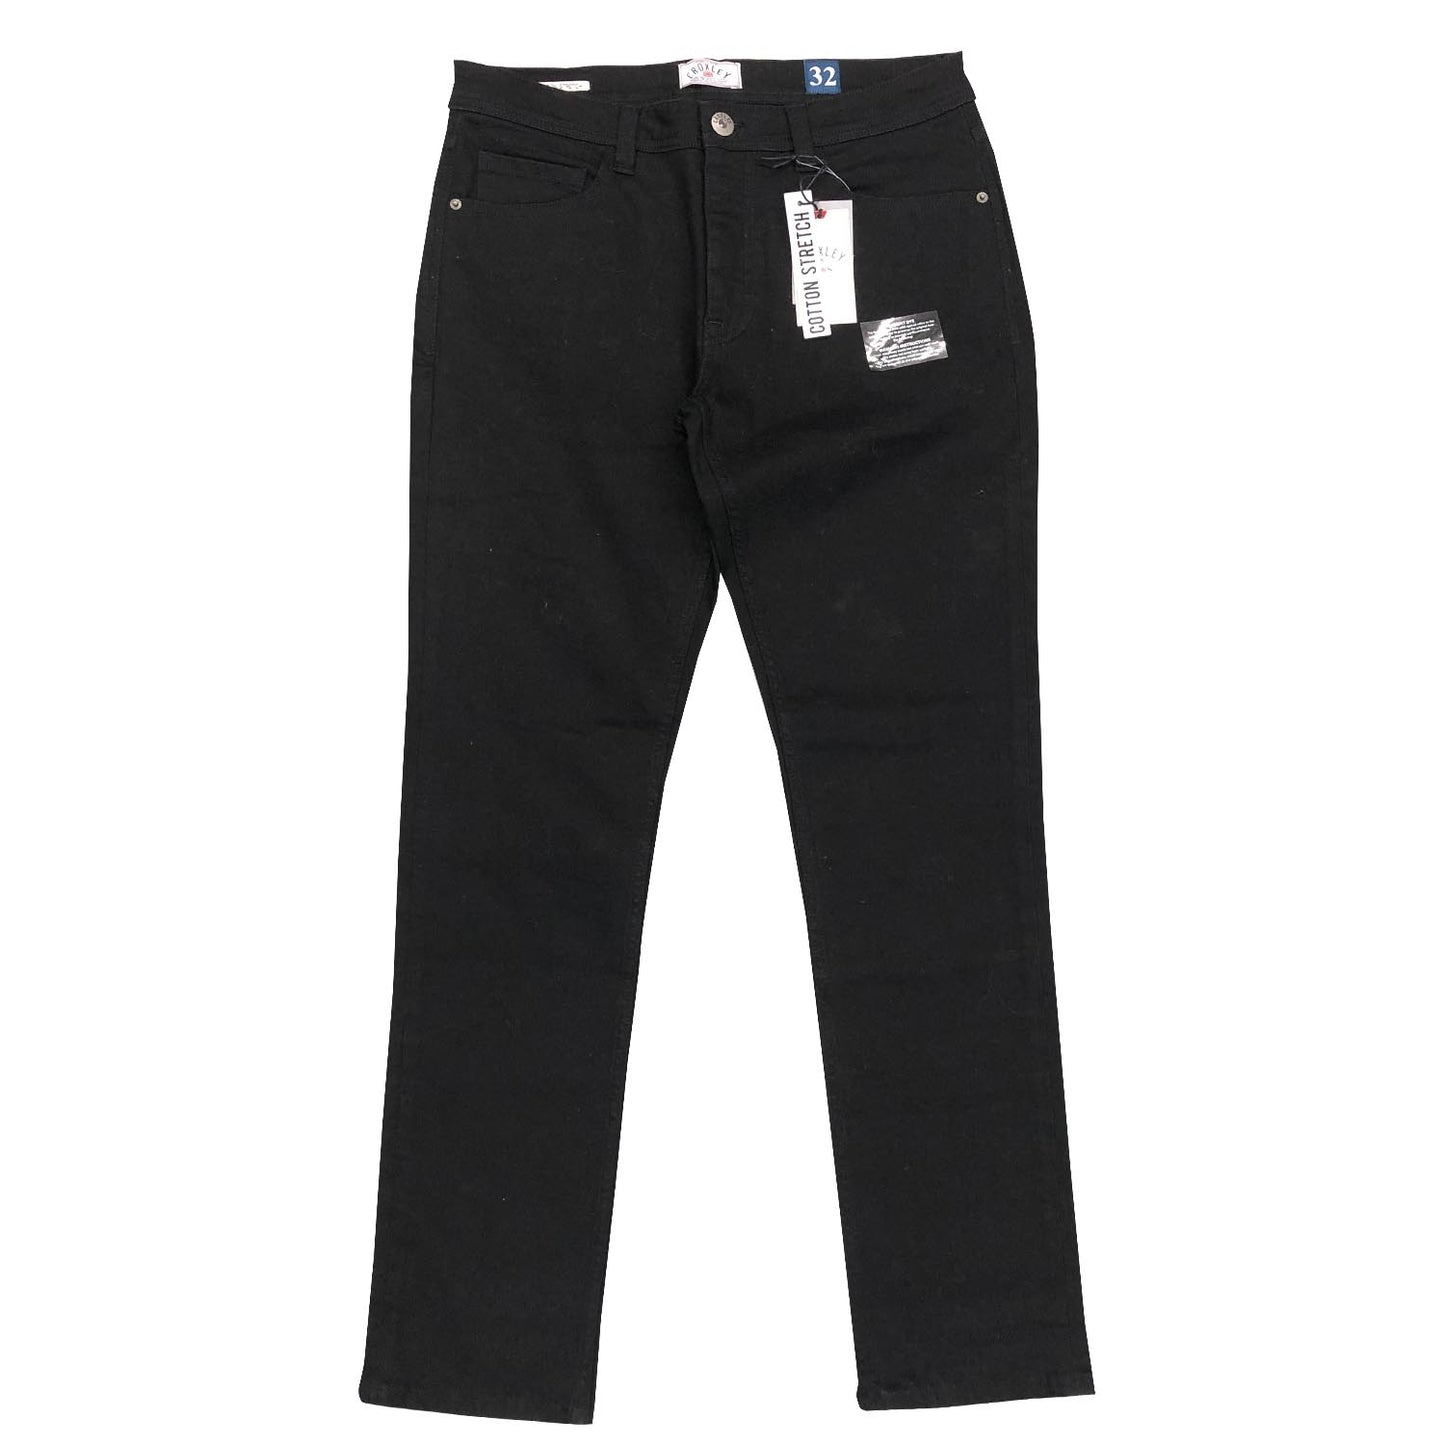 CROXLEY - Slim Fit Cotton Bull Jean - LabelledUp.com